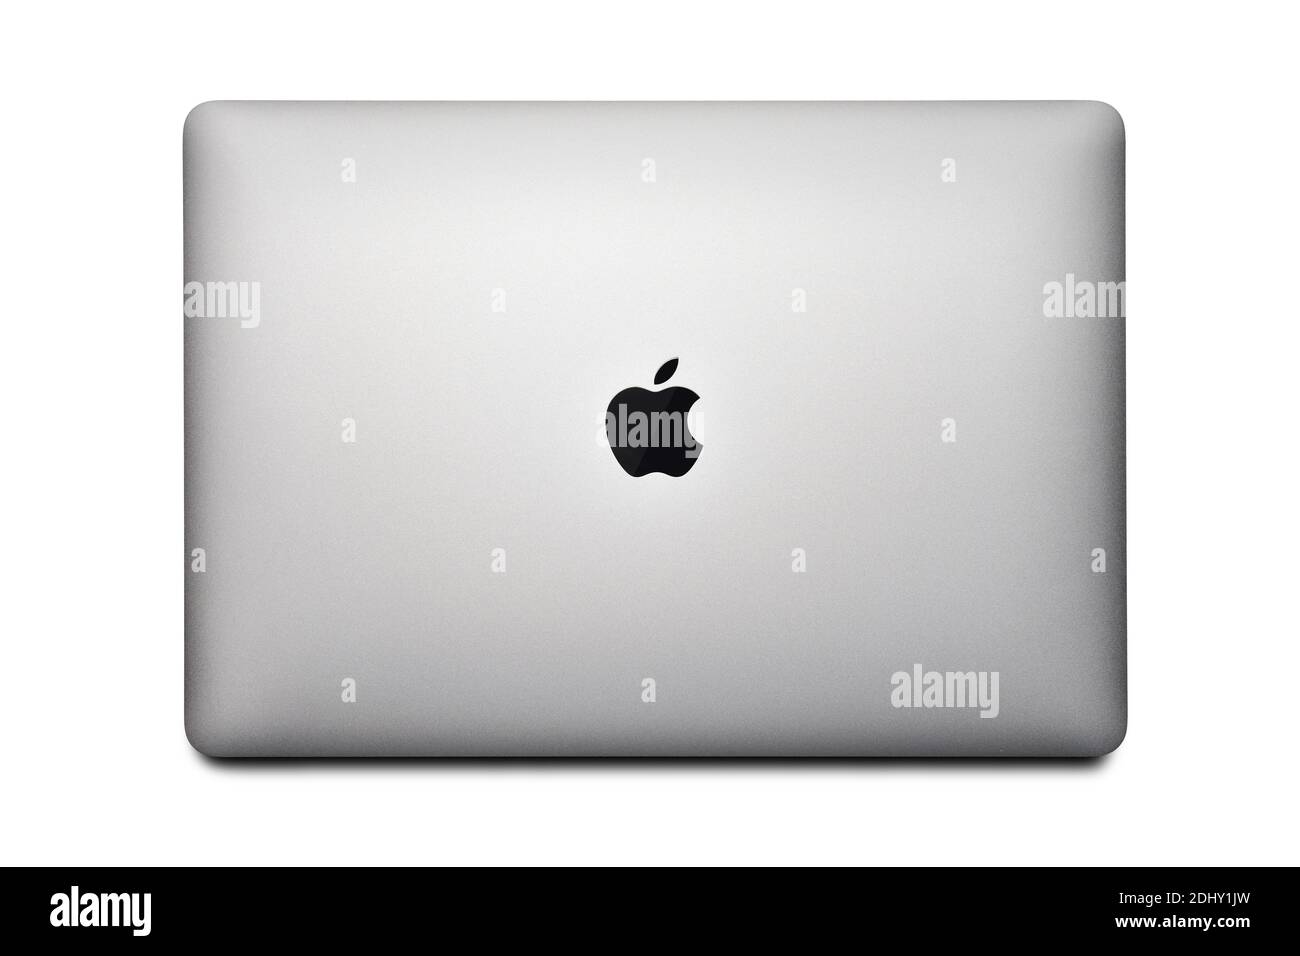 STARIY OSKOL, RUSSLAND - 10. DEZEMBER 2020: MacBook Air mit M1 Chip 2020 auf weißem Hintergrund Draufsicht Stockfoto